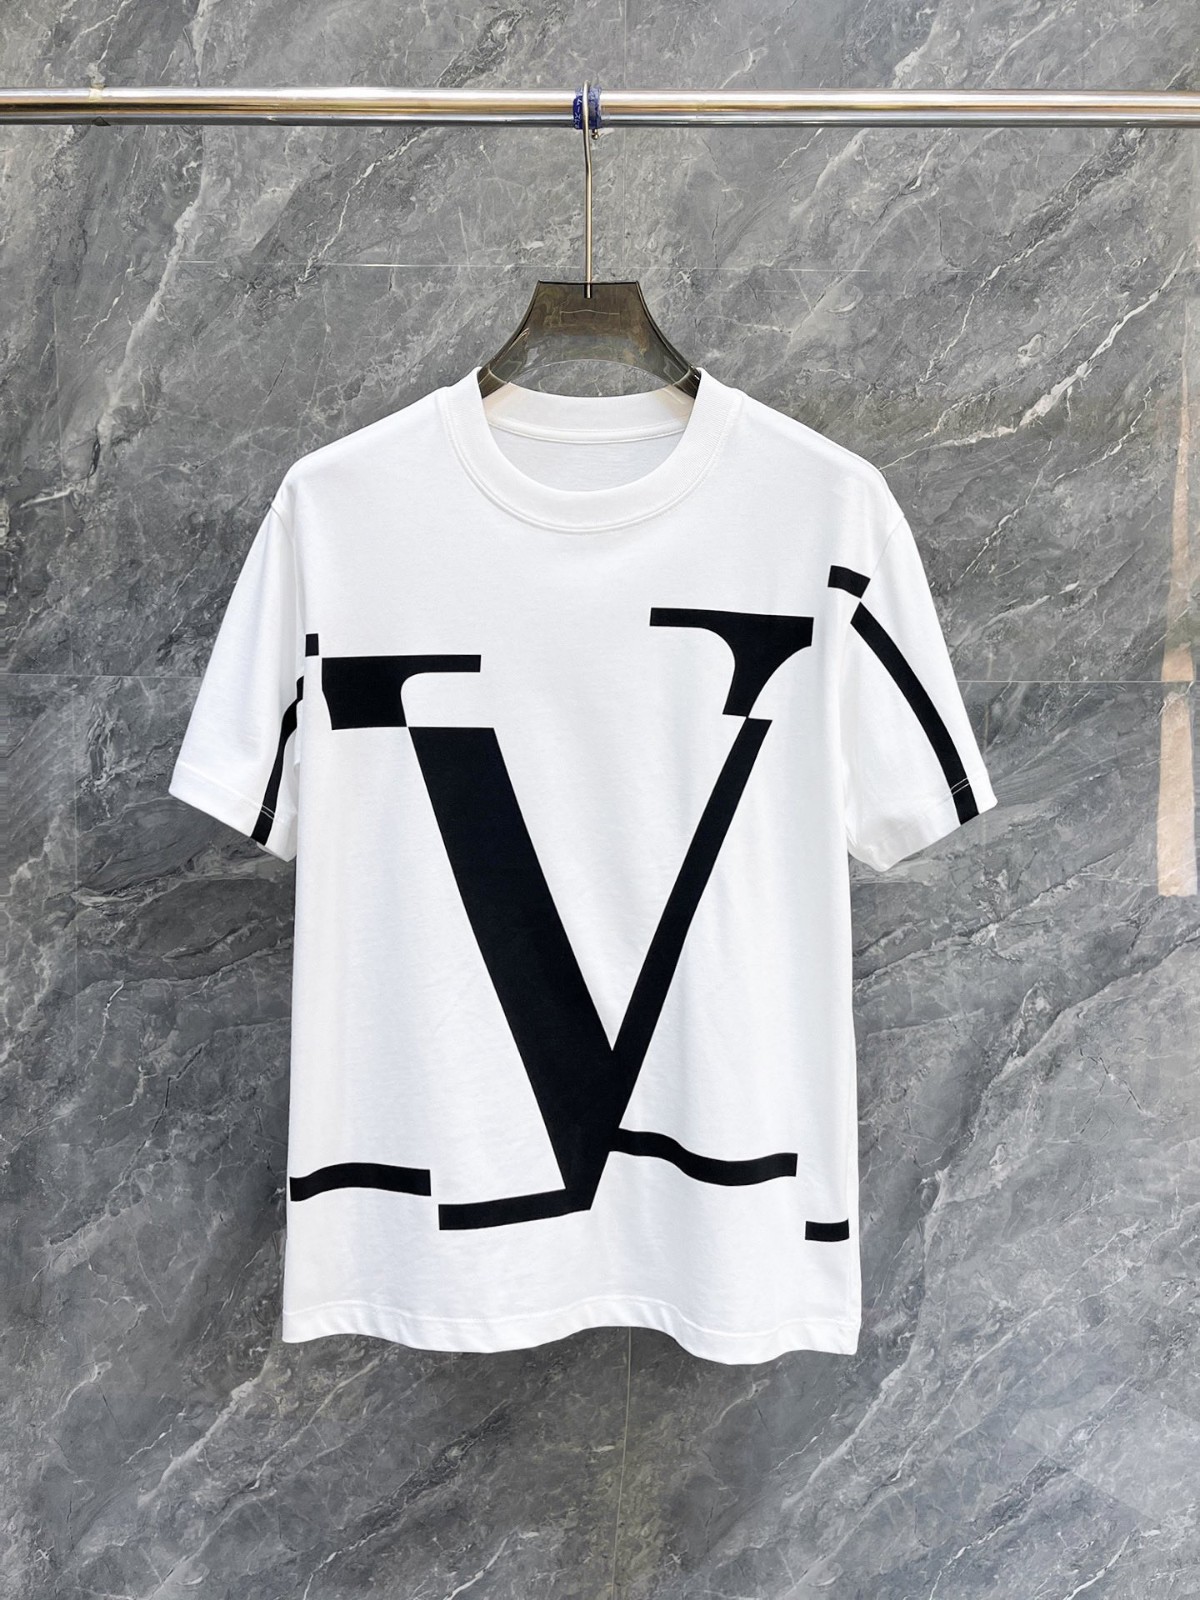 Vロゴプリント クルーネック Tシャツ ヴァレンティノ 半袖Tシャツ コピー ホワイト